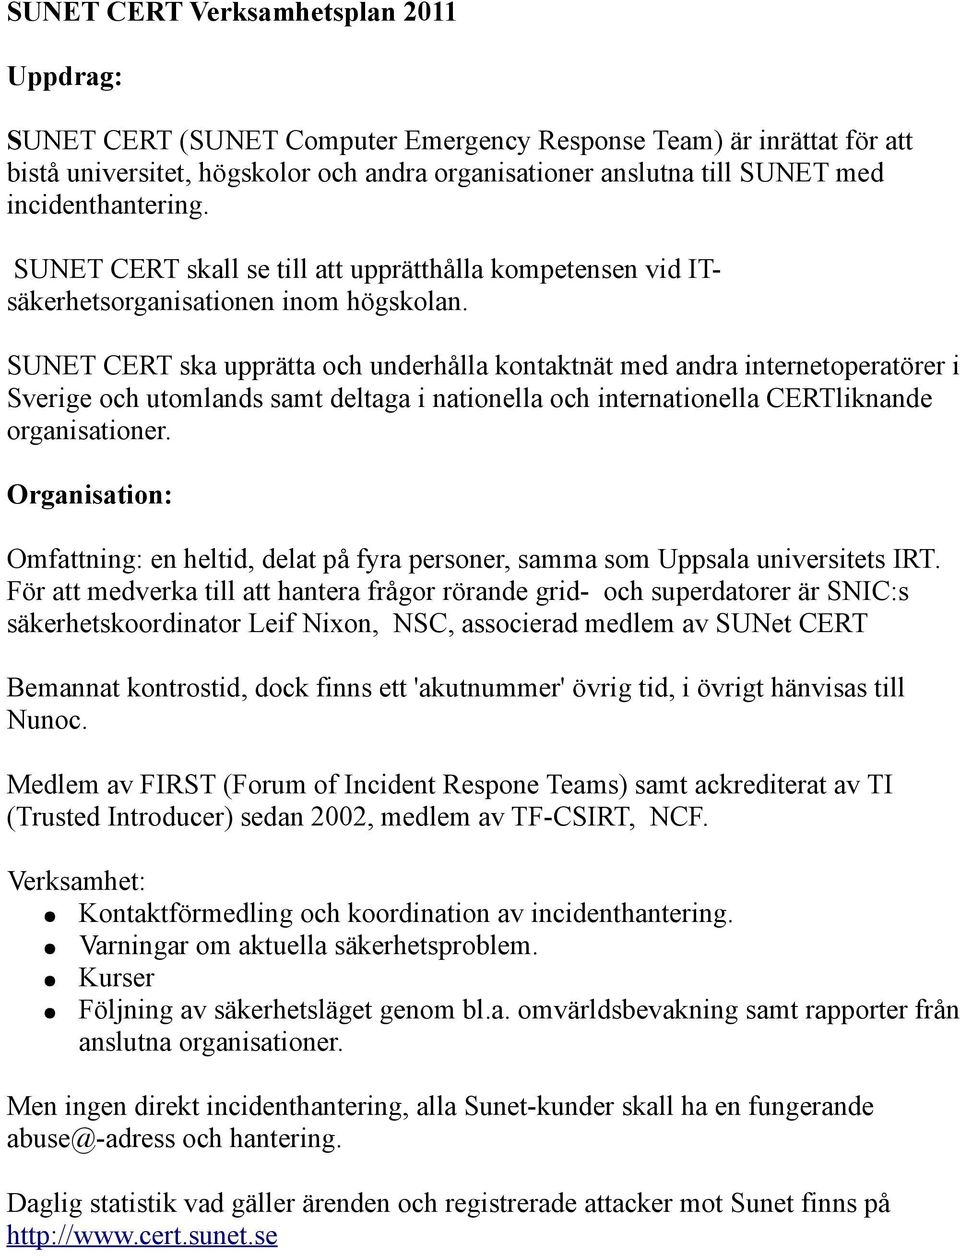 SUNET CERT ska upprätta och underhålla kontaktnät med andra internetoperatörer i Sverige och utomlands samt deltaga i nationella och internationella CERTliknande organisationer.